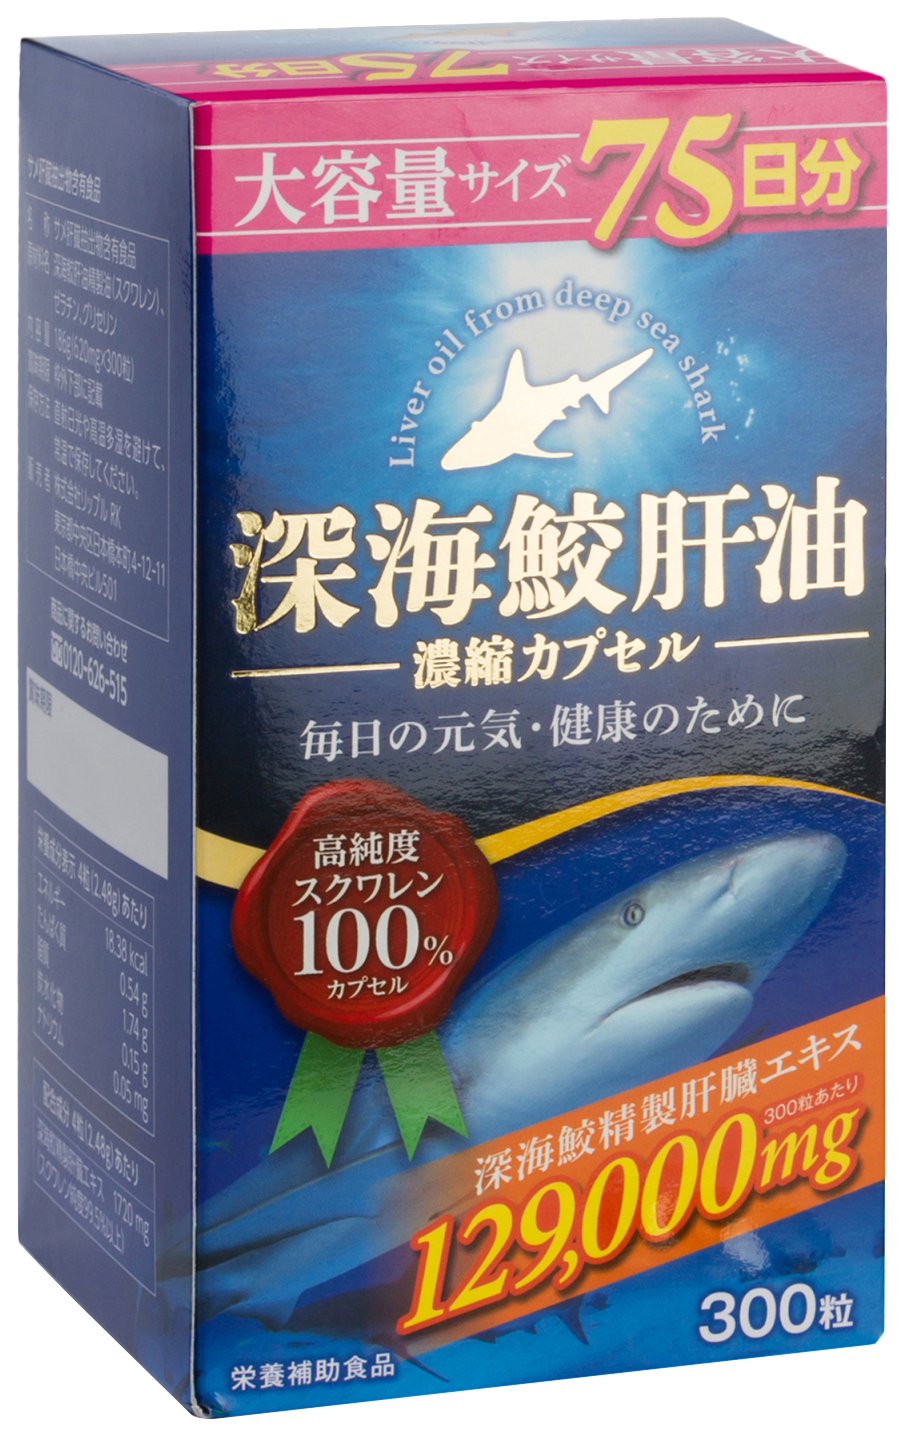 Сквален купить отзывы. Акулий сквален Orihiro капсулы. Инфинити сквален. Сквален капсулы. Японский препарат сквален.